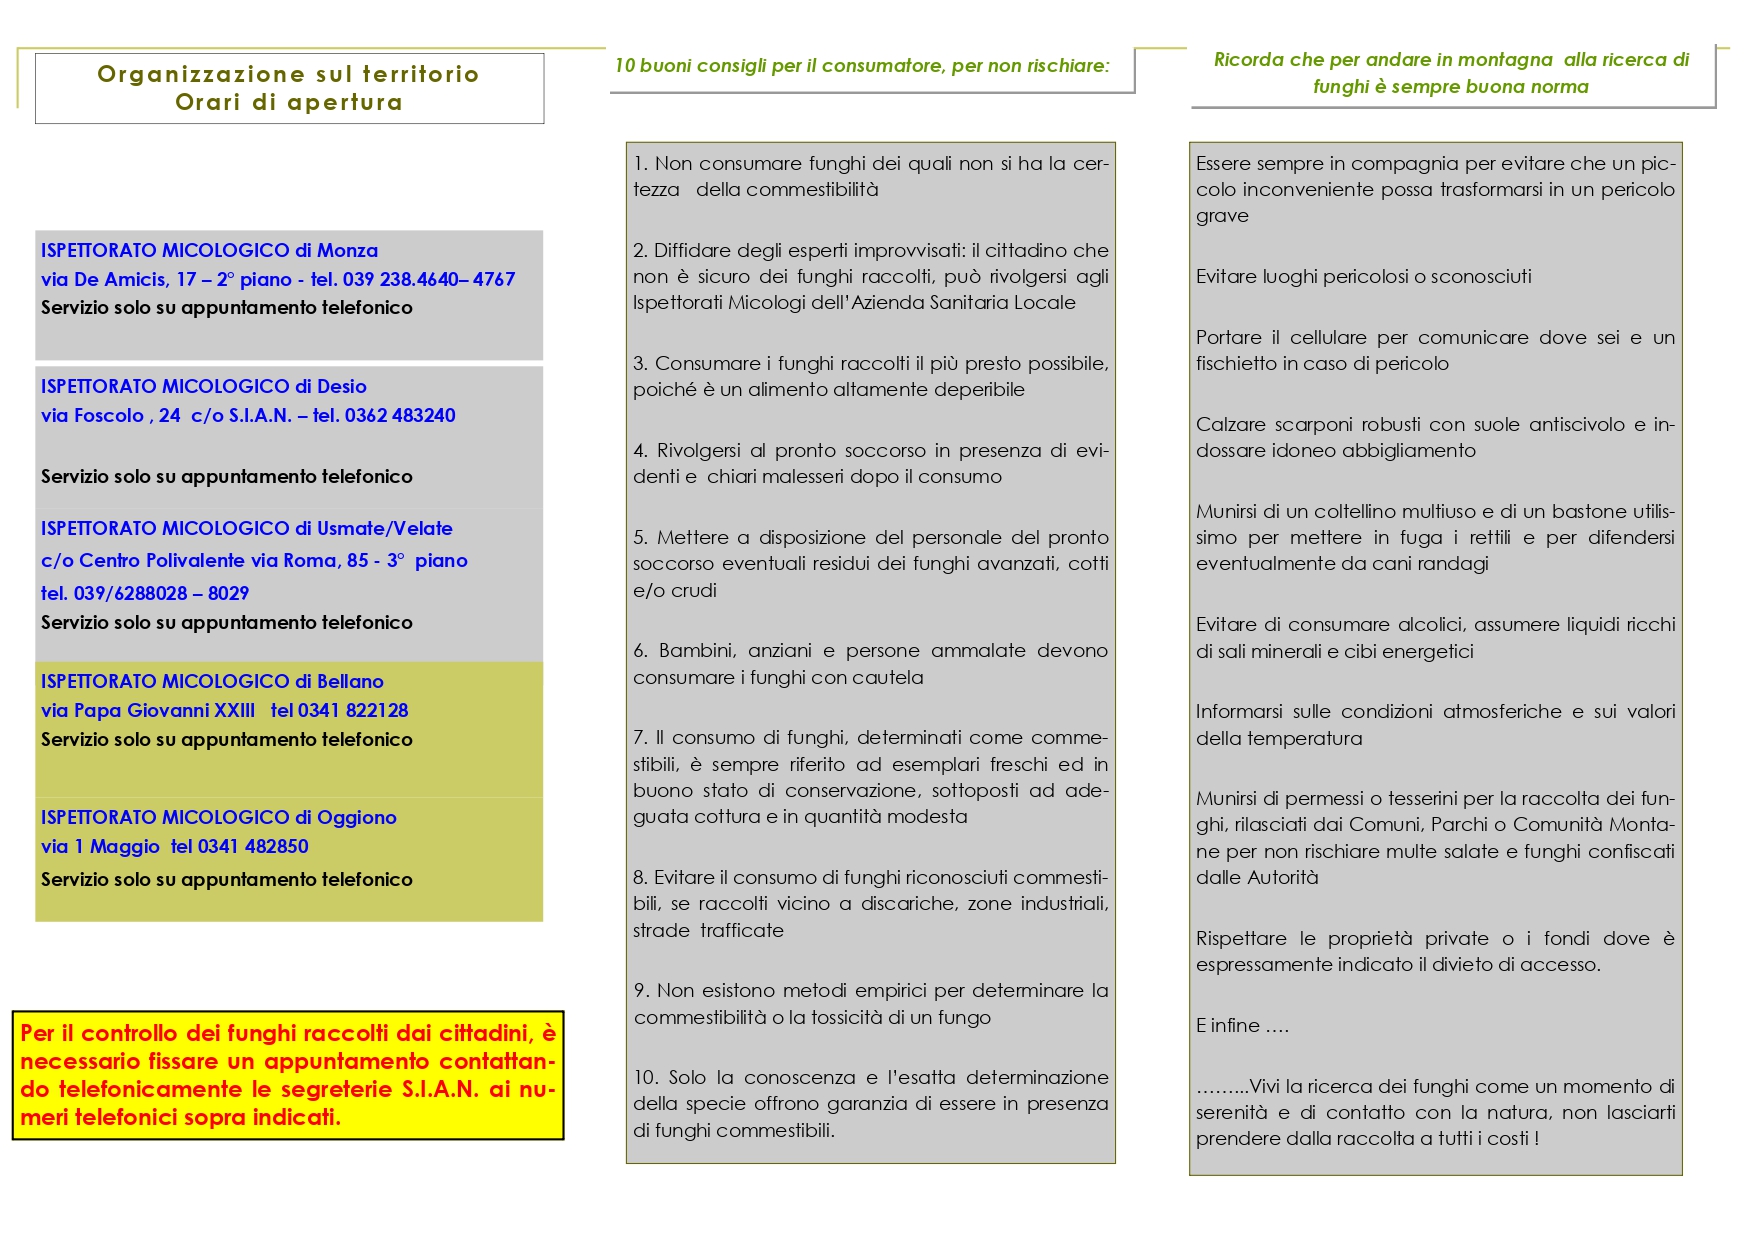 FUNGHI brochure ispettorato micologico 2020_page-0002